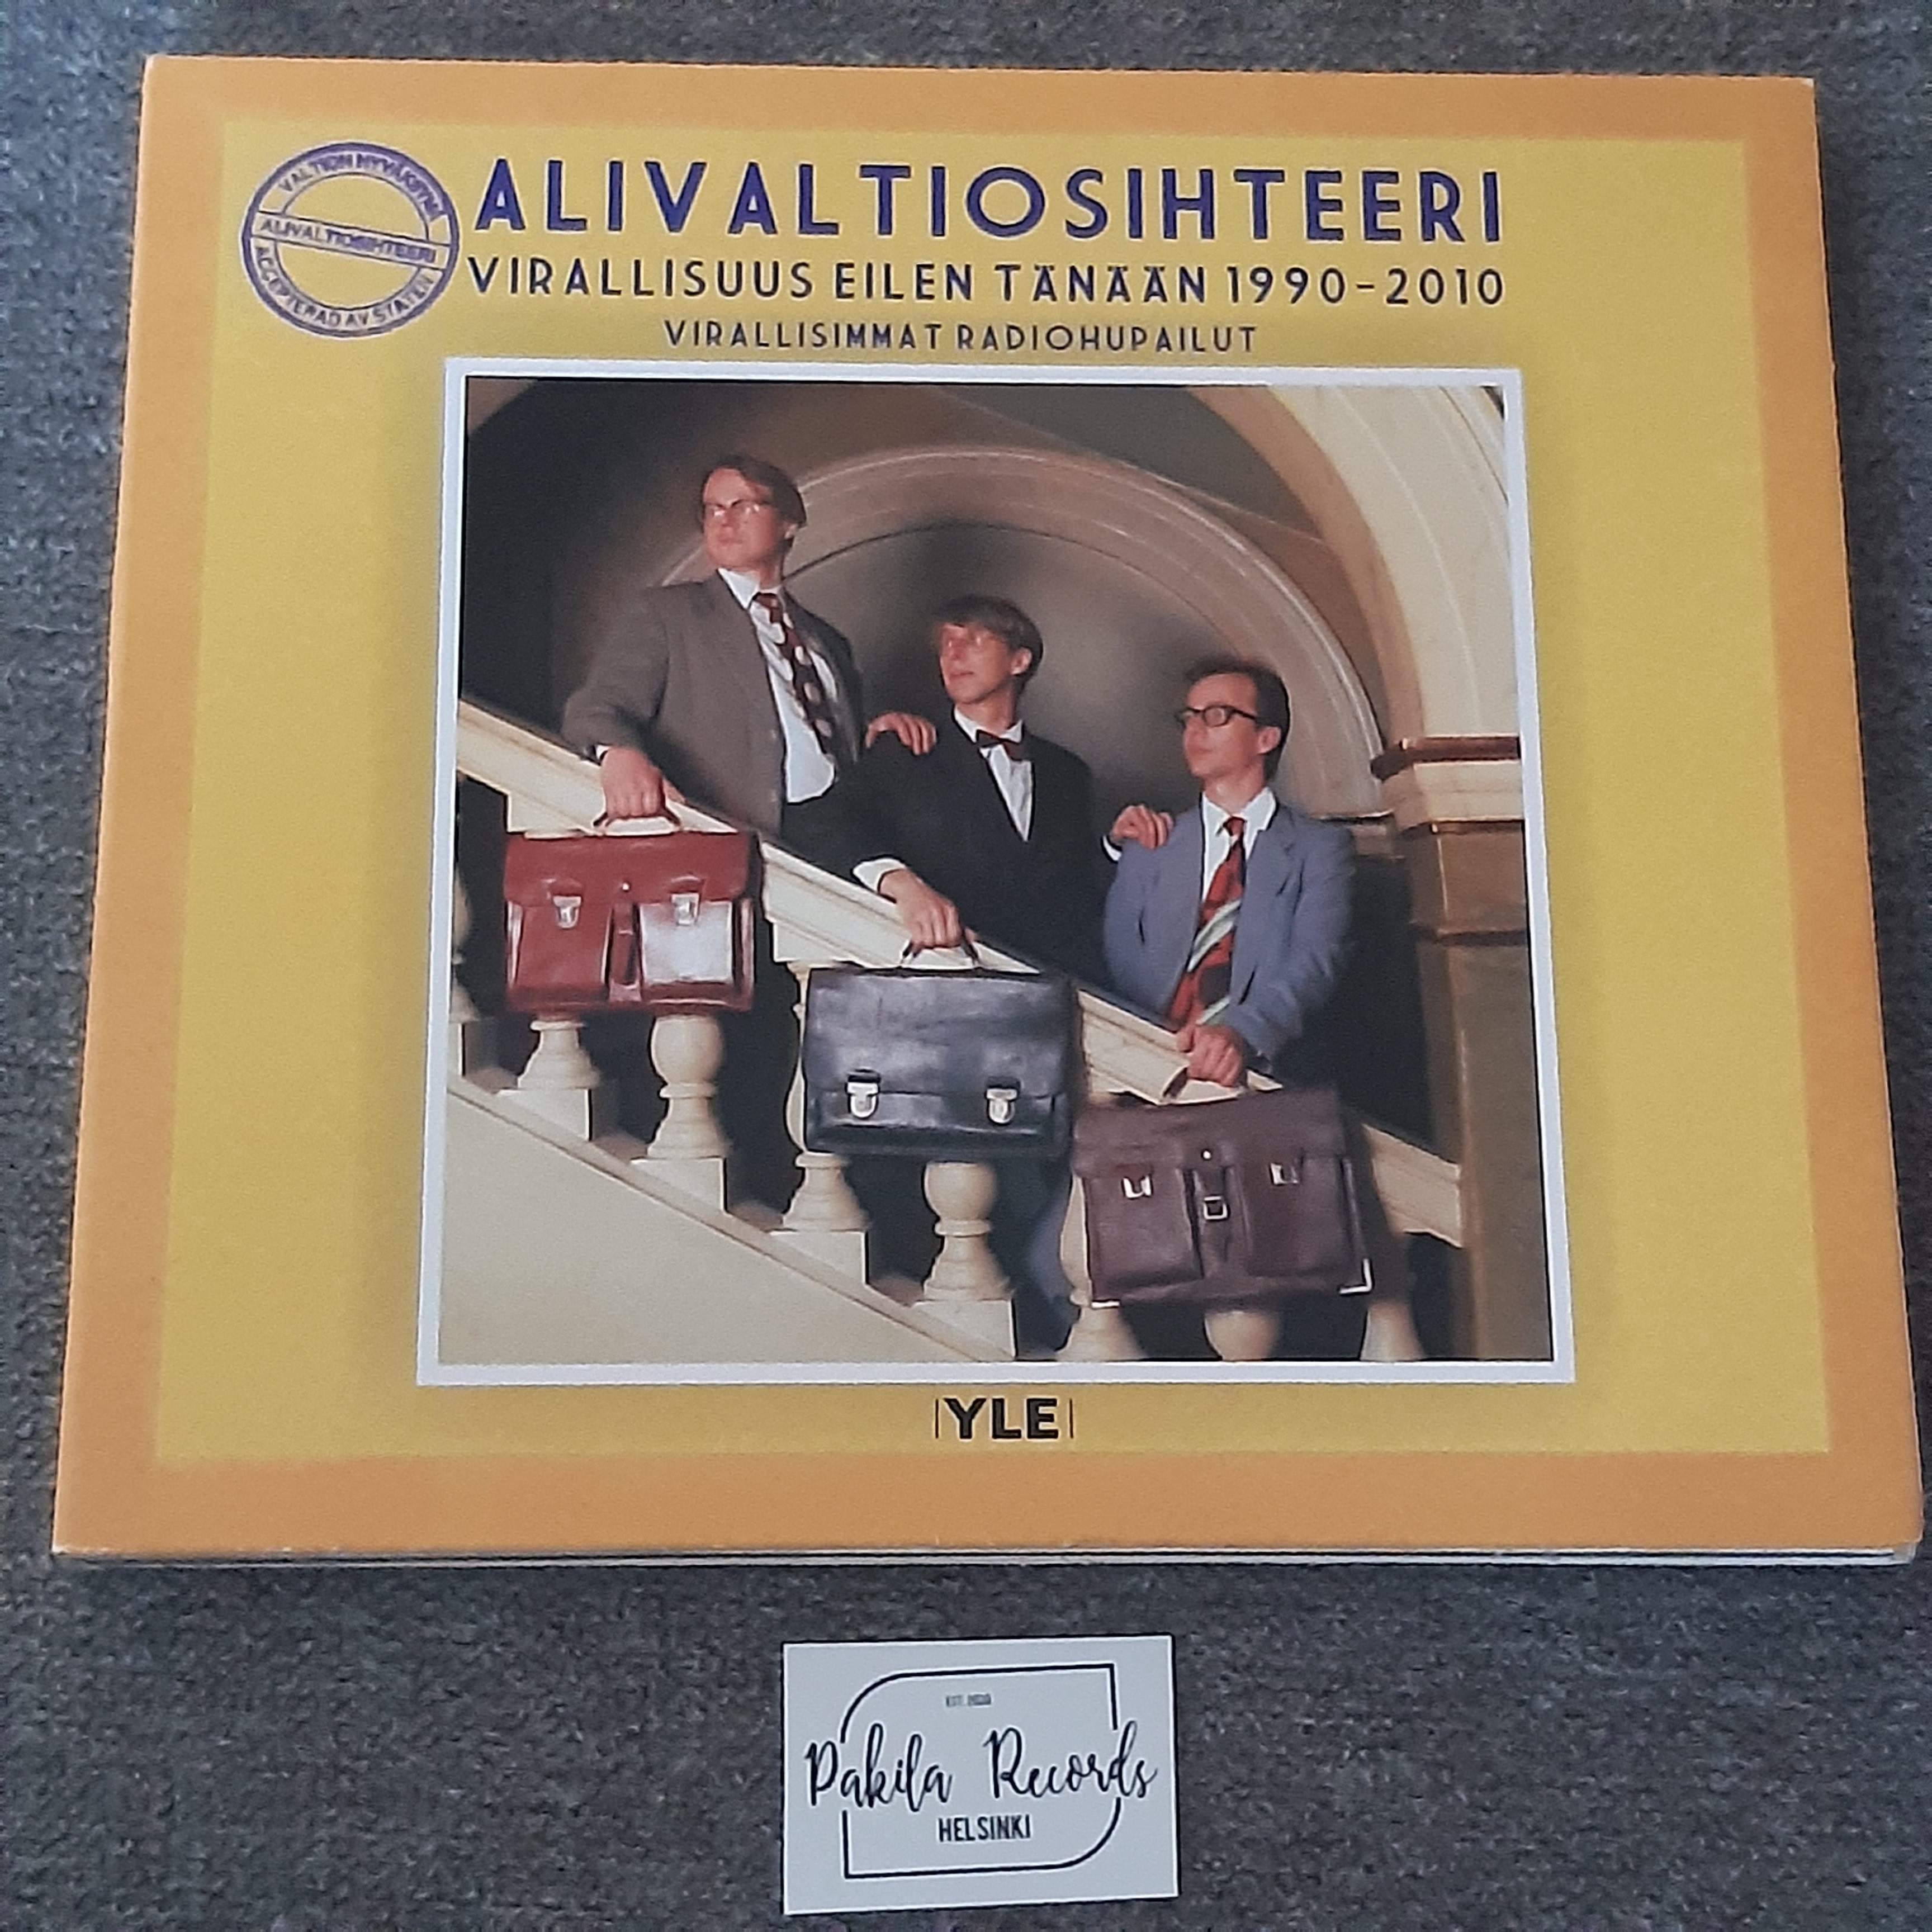 Alivaltiosihteeri - Virallisuus eilen tänään 1990-2010 - CD (käytetty)